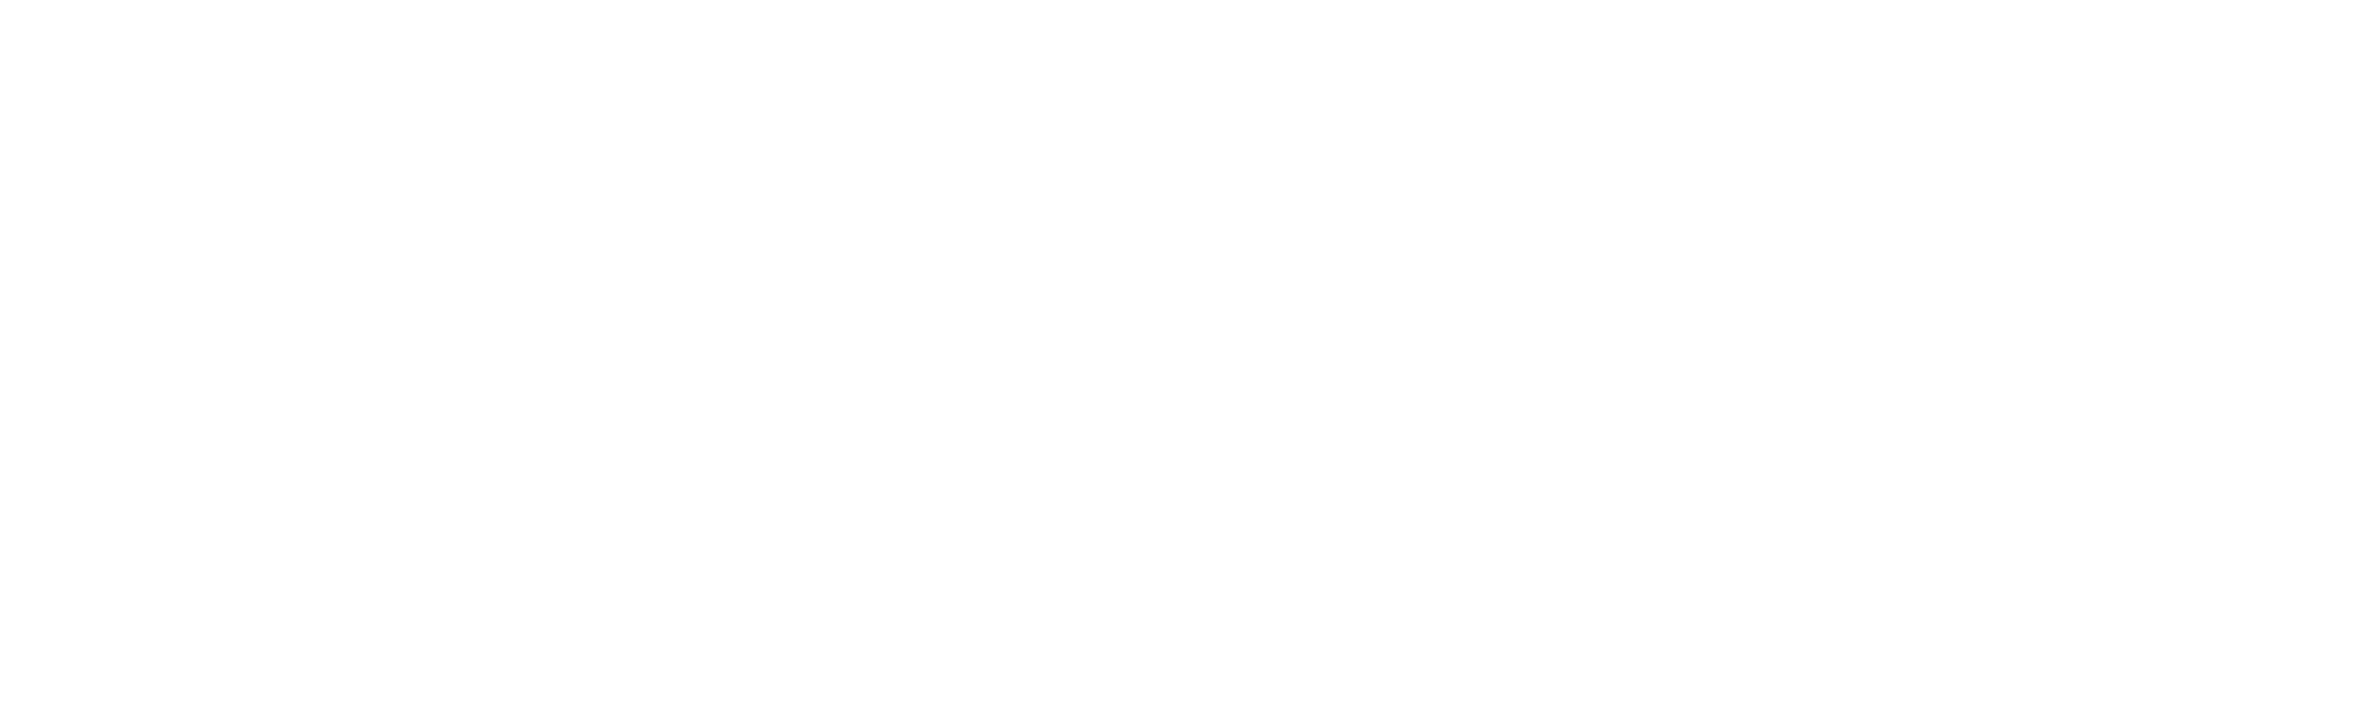 circulareconomycenter_logo_white